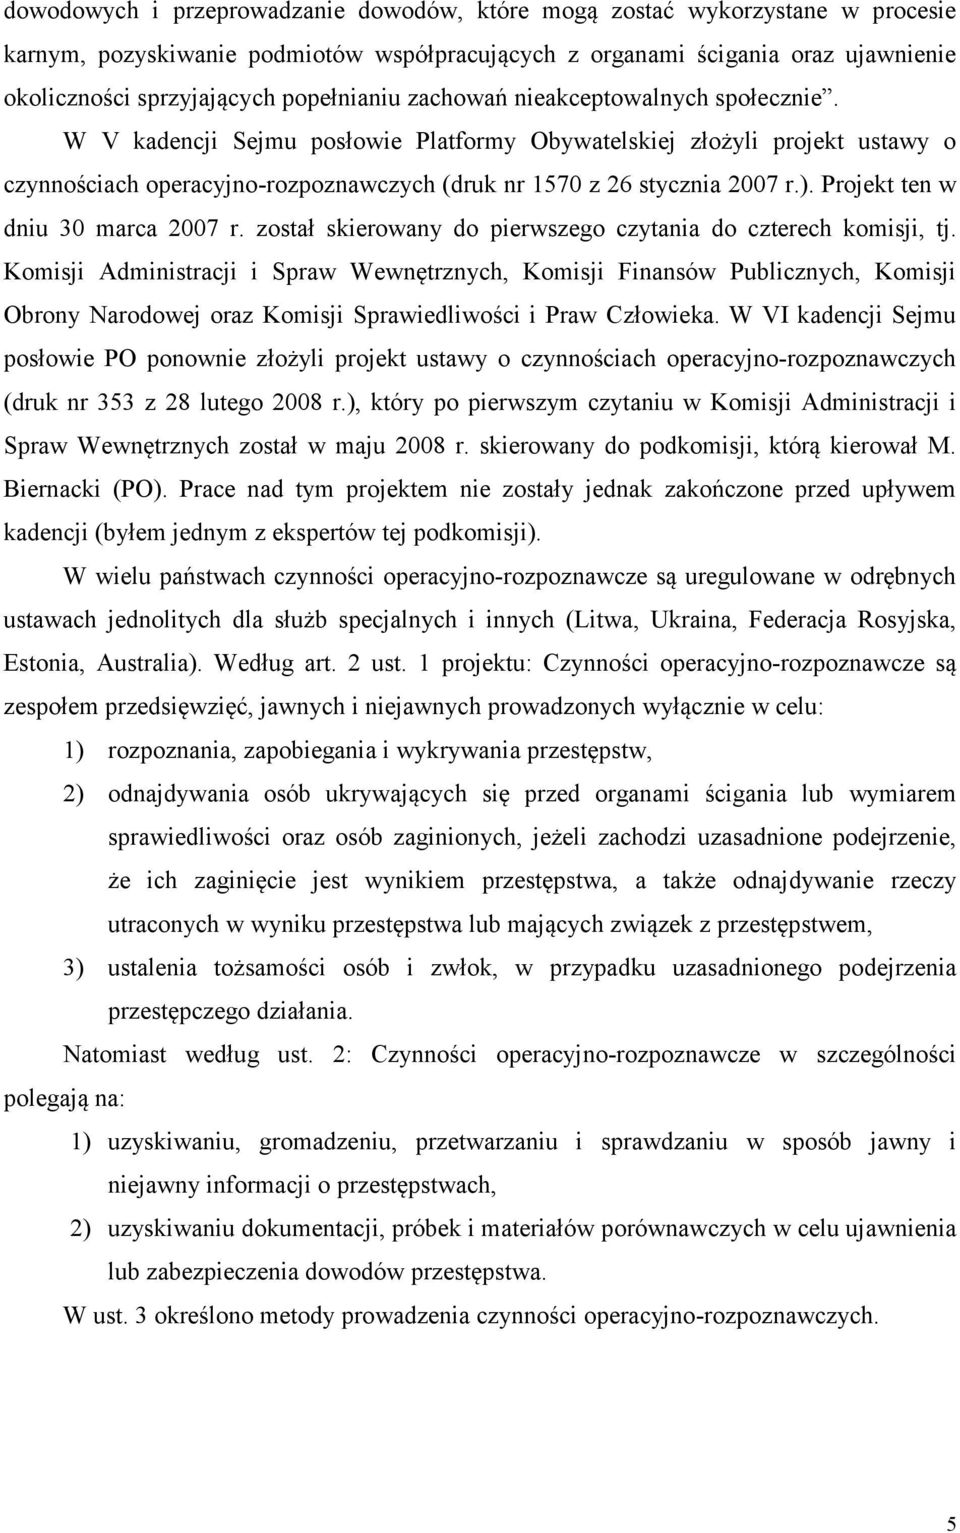 W V kadencji Sejmu posłowie Platformy Obywatelskiej złożyli projekt ustawy o czynnościach operacyjno-rozpoznawczych (druk nr 1570 z 26 stycznia 2007 r.). Projekt ten w dniu 30 marca 2007 r.